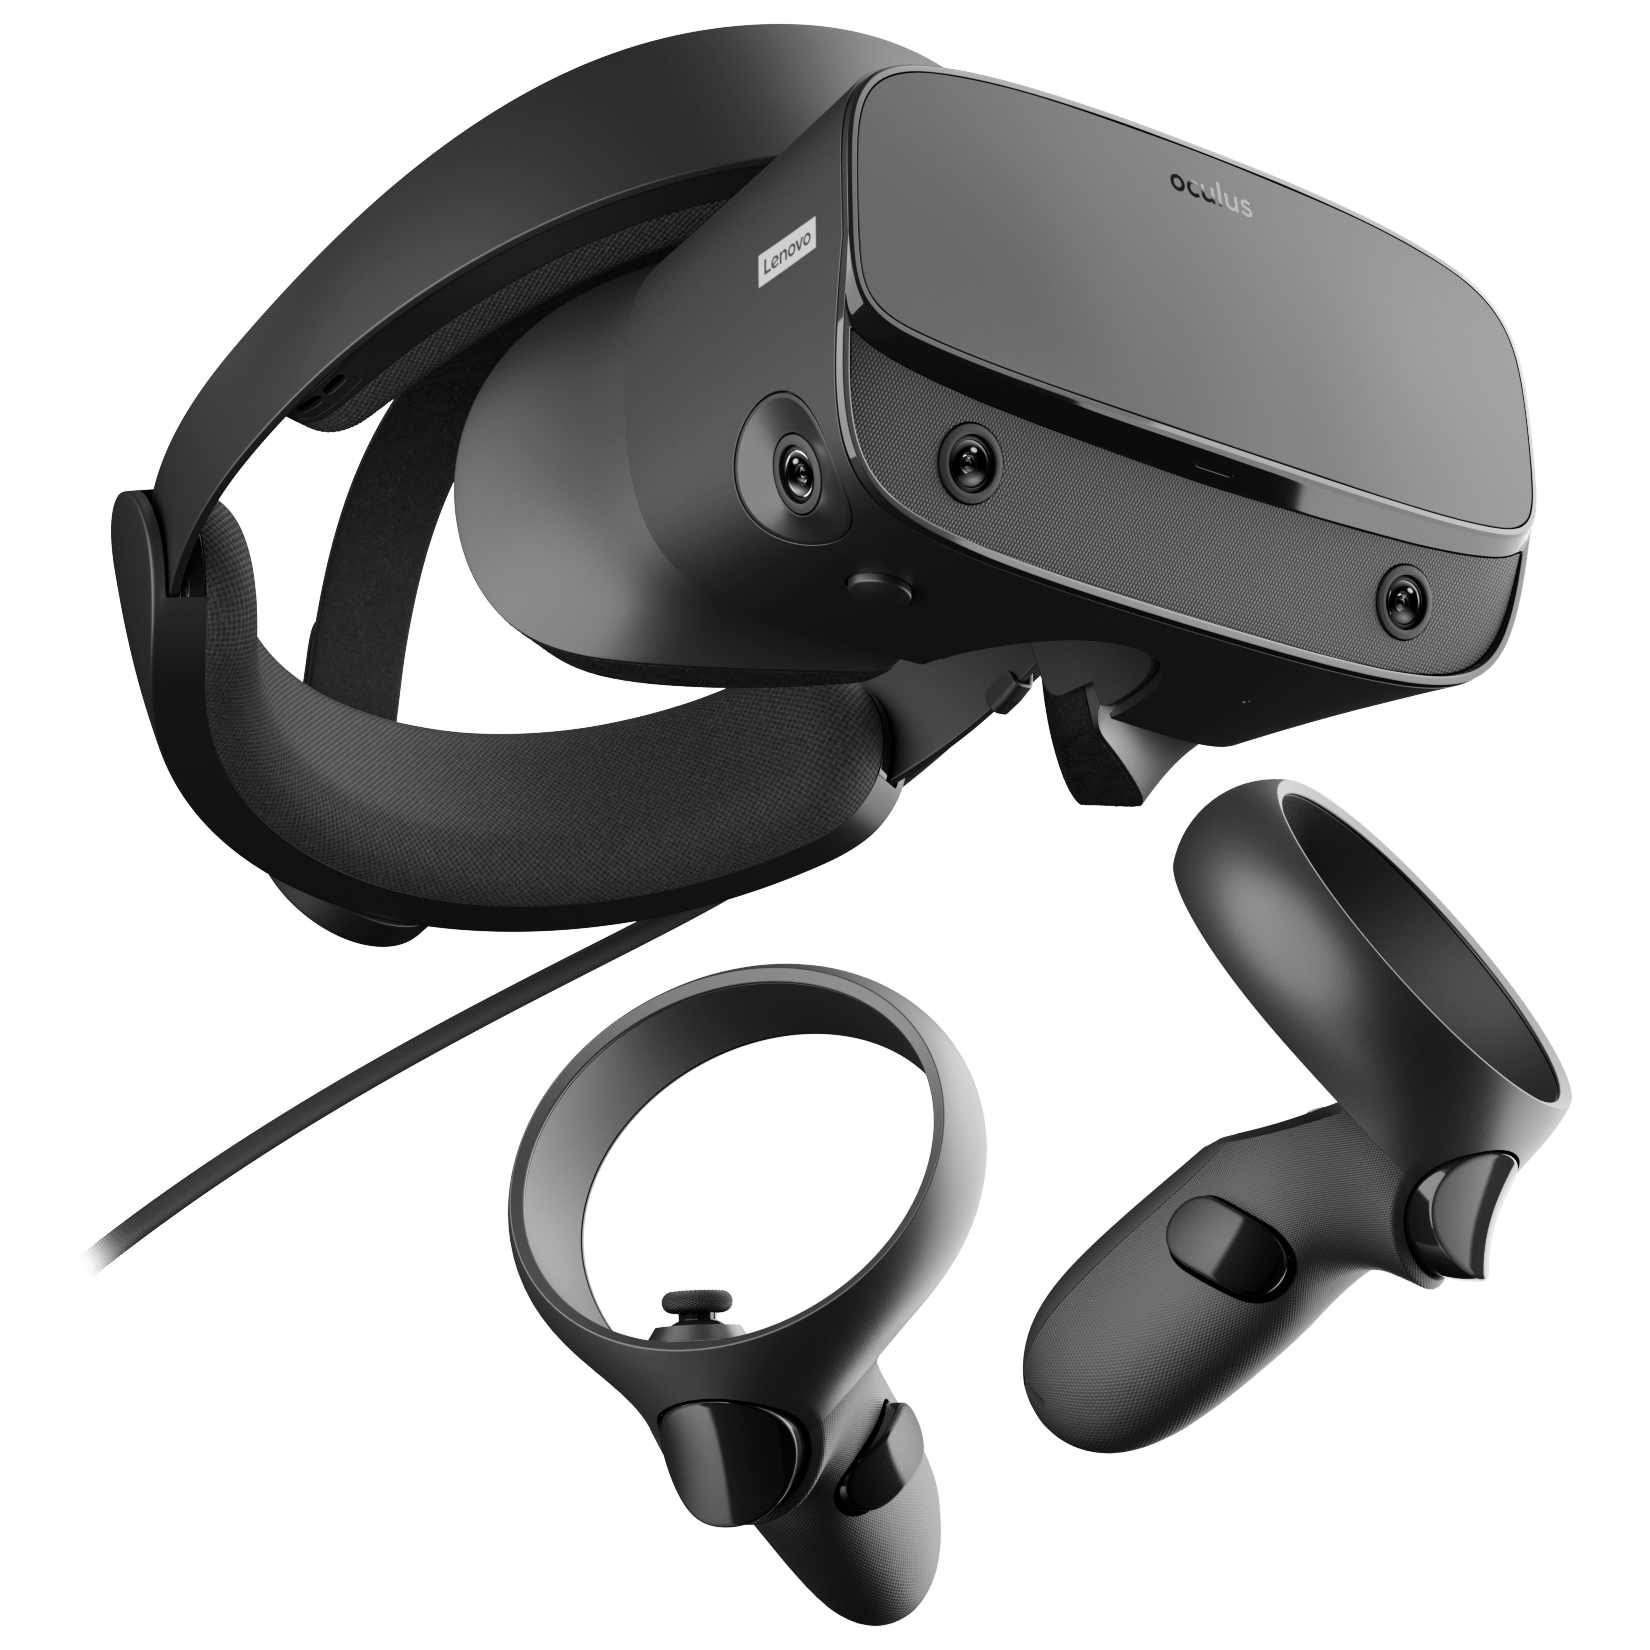 Очки виртуальной реальности Oculus Rift S б/у